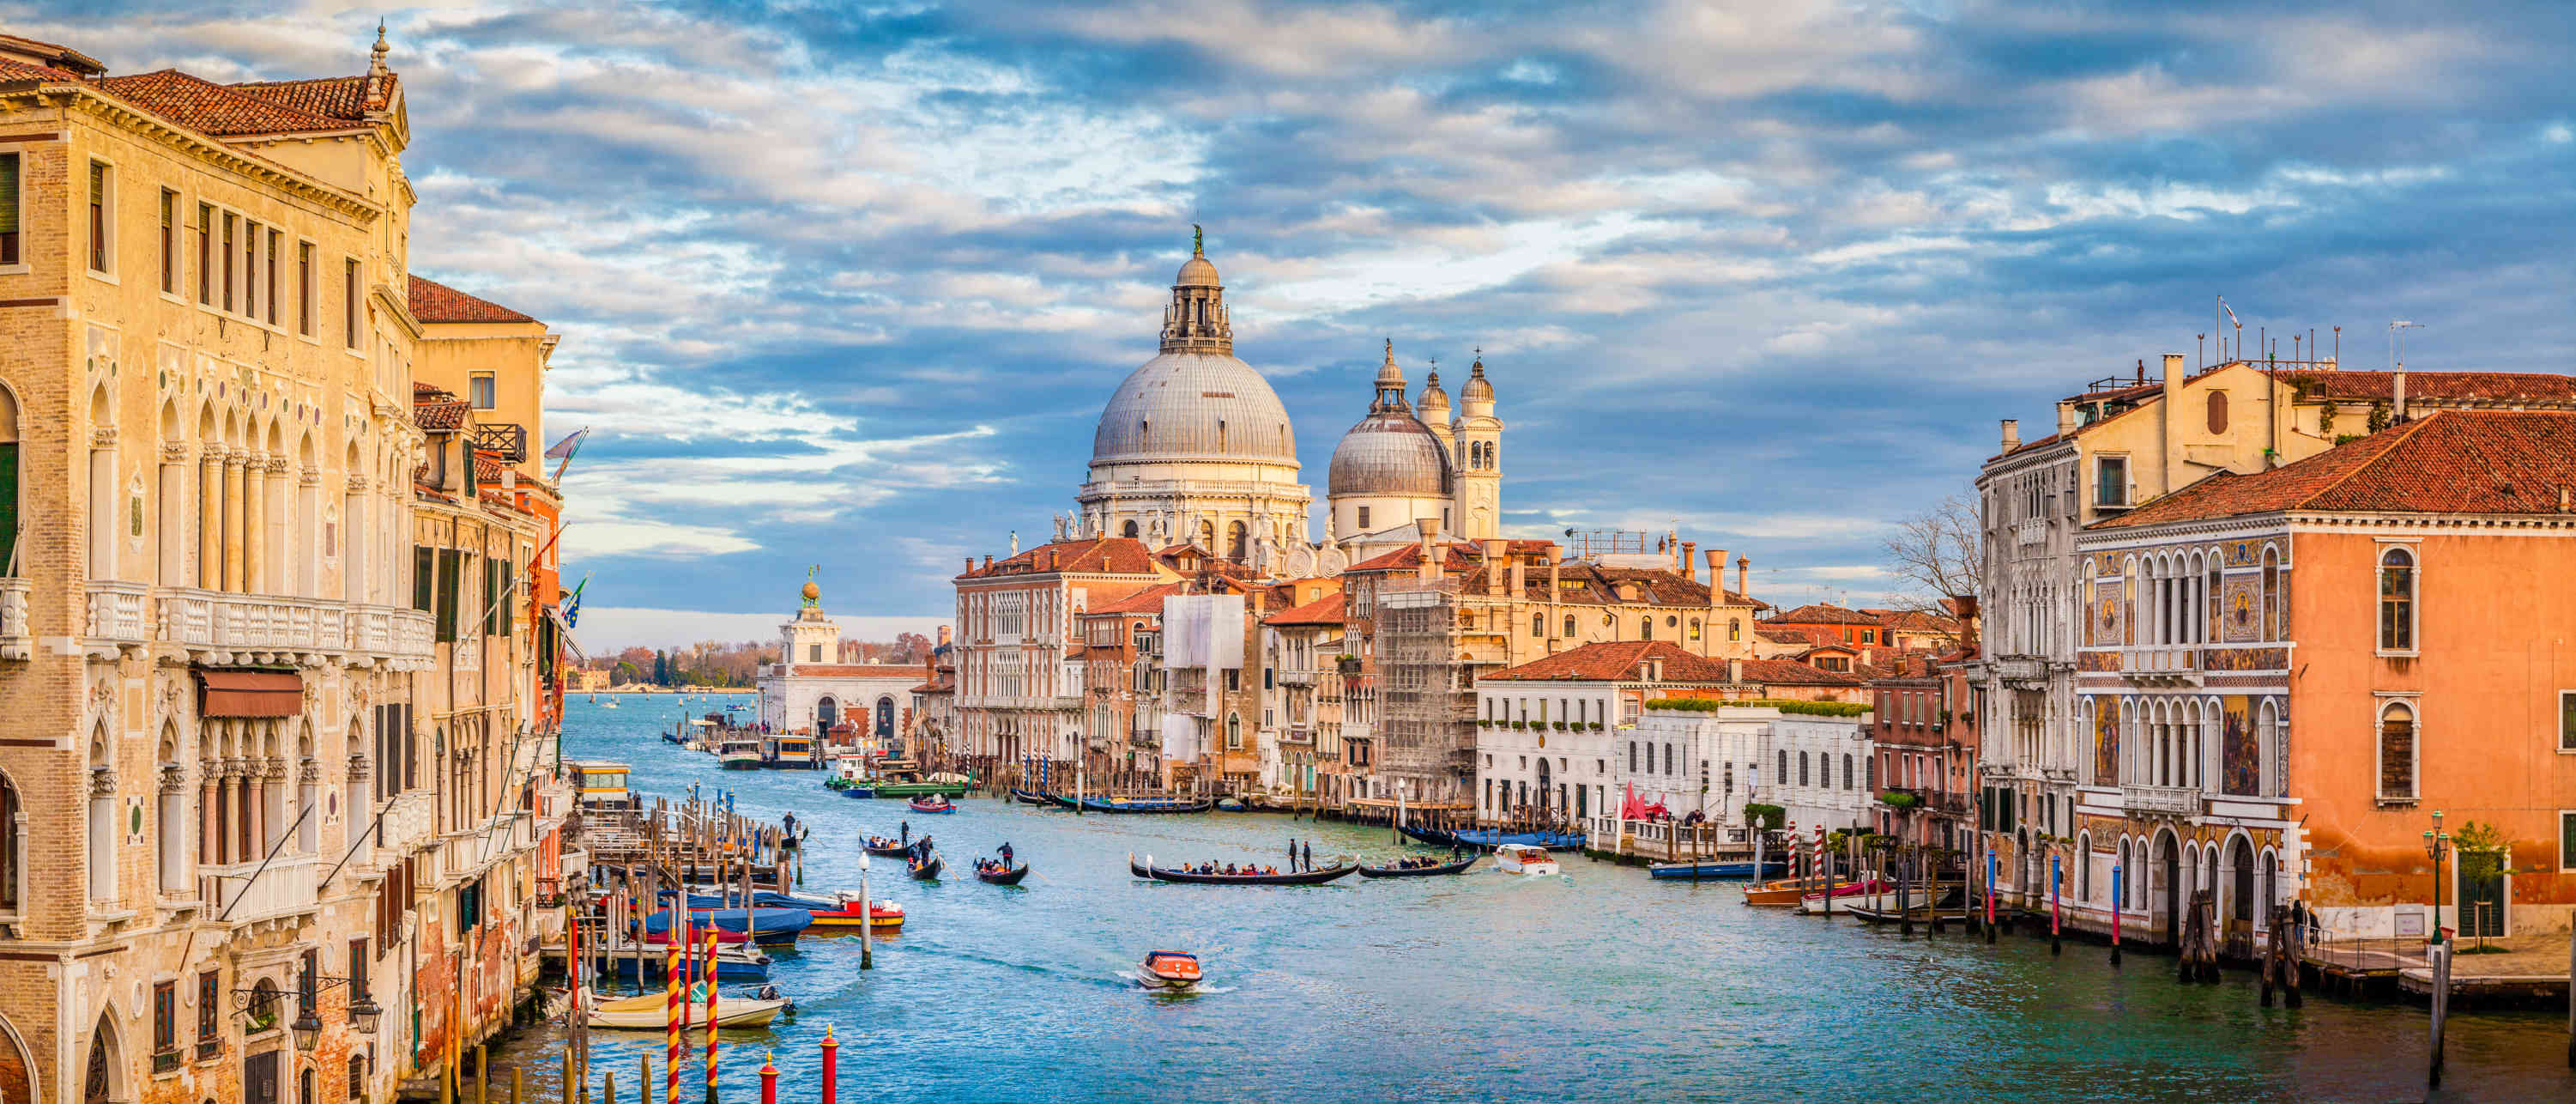 Venise est construite sur une lagune mais cette zone était émergée il y a plusieurs siècles. © JFL Photography, Adobe Stock